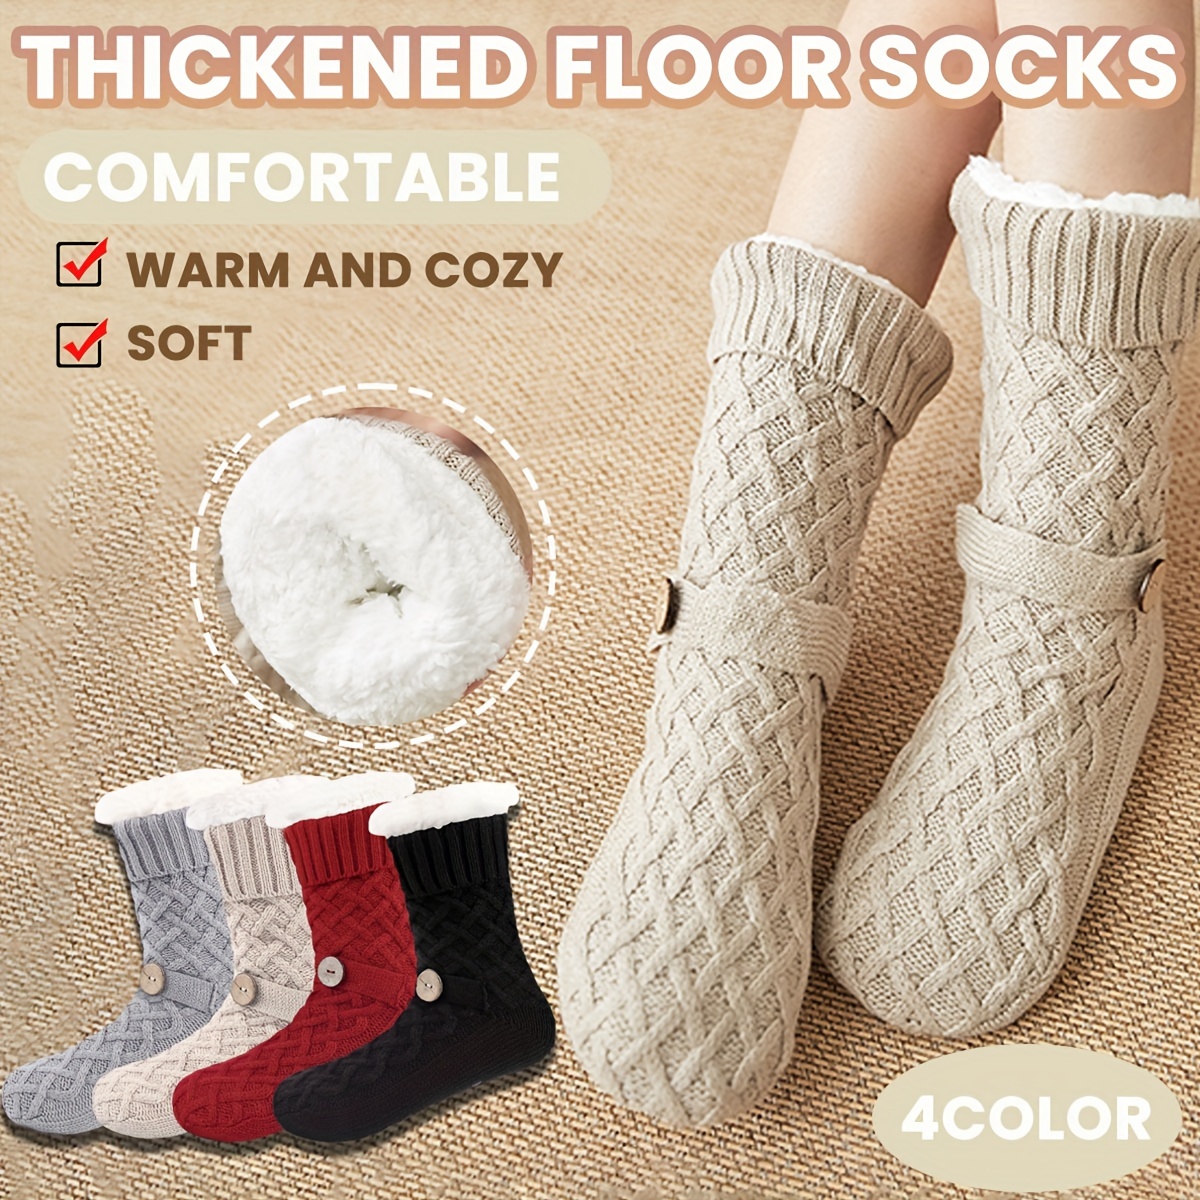 White Cozy Fuzzy Slipper Socks With Grips